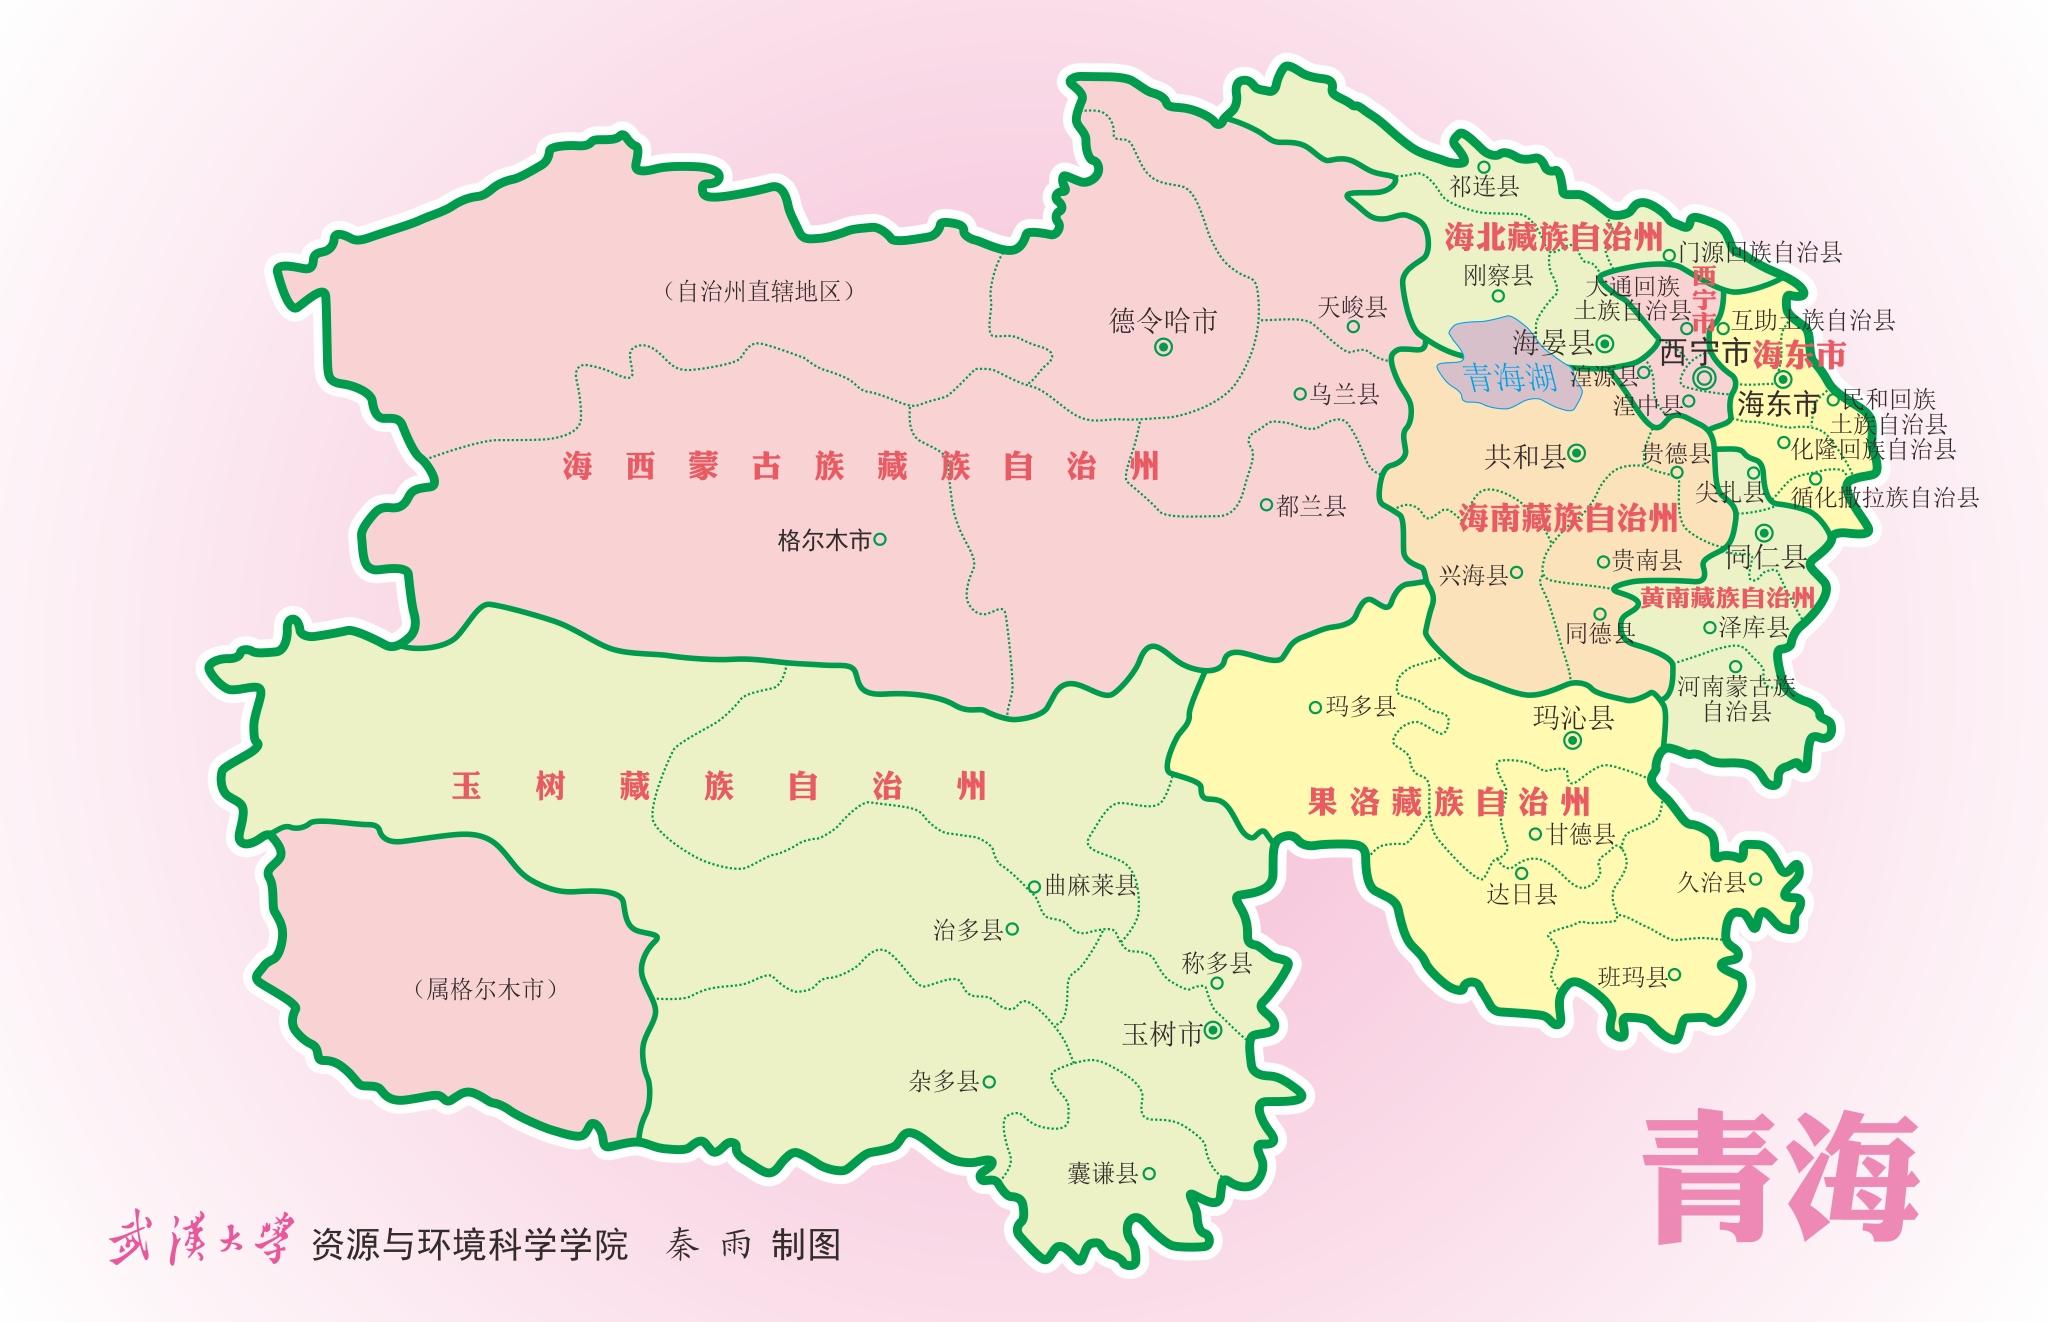 2018年11月17日,青海省被评为2018年度《中国国家旅游》最佳旅游创新